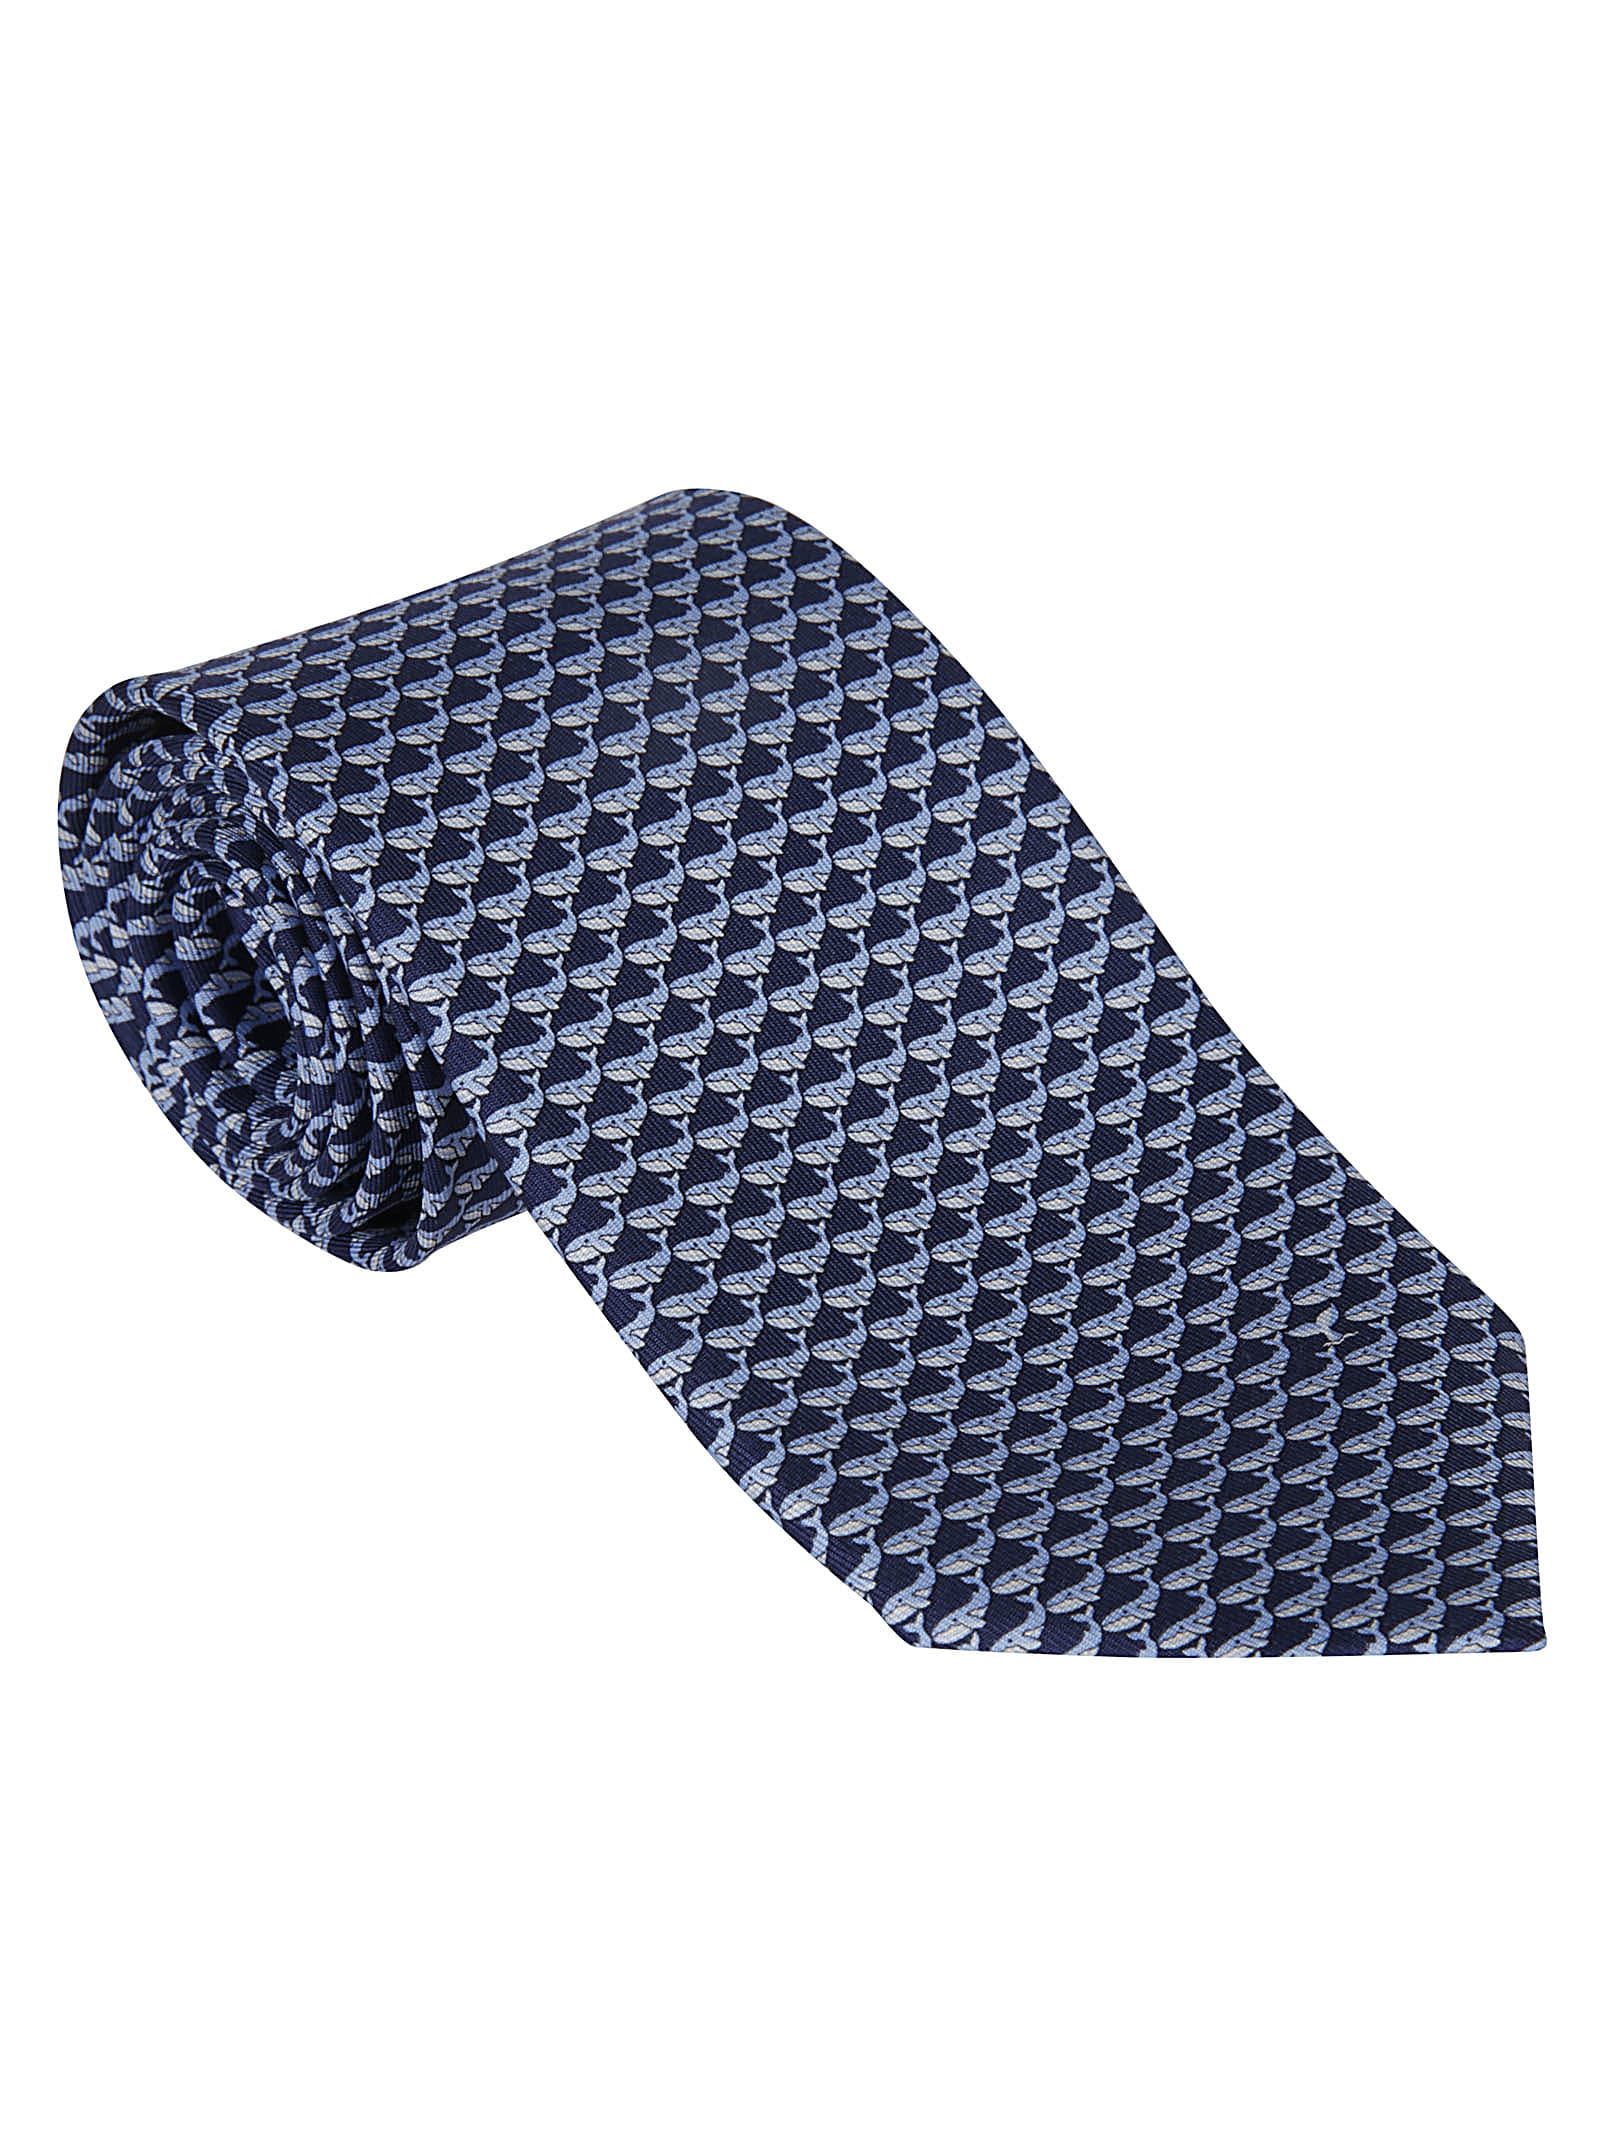 Salvatore Ferragamo Classic Printed Tie